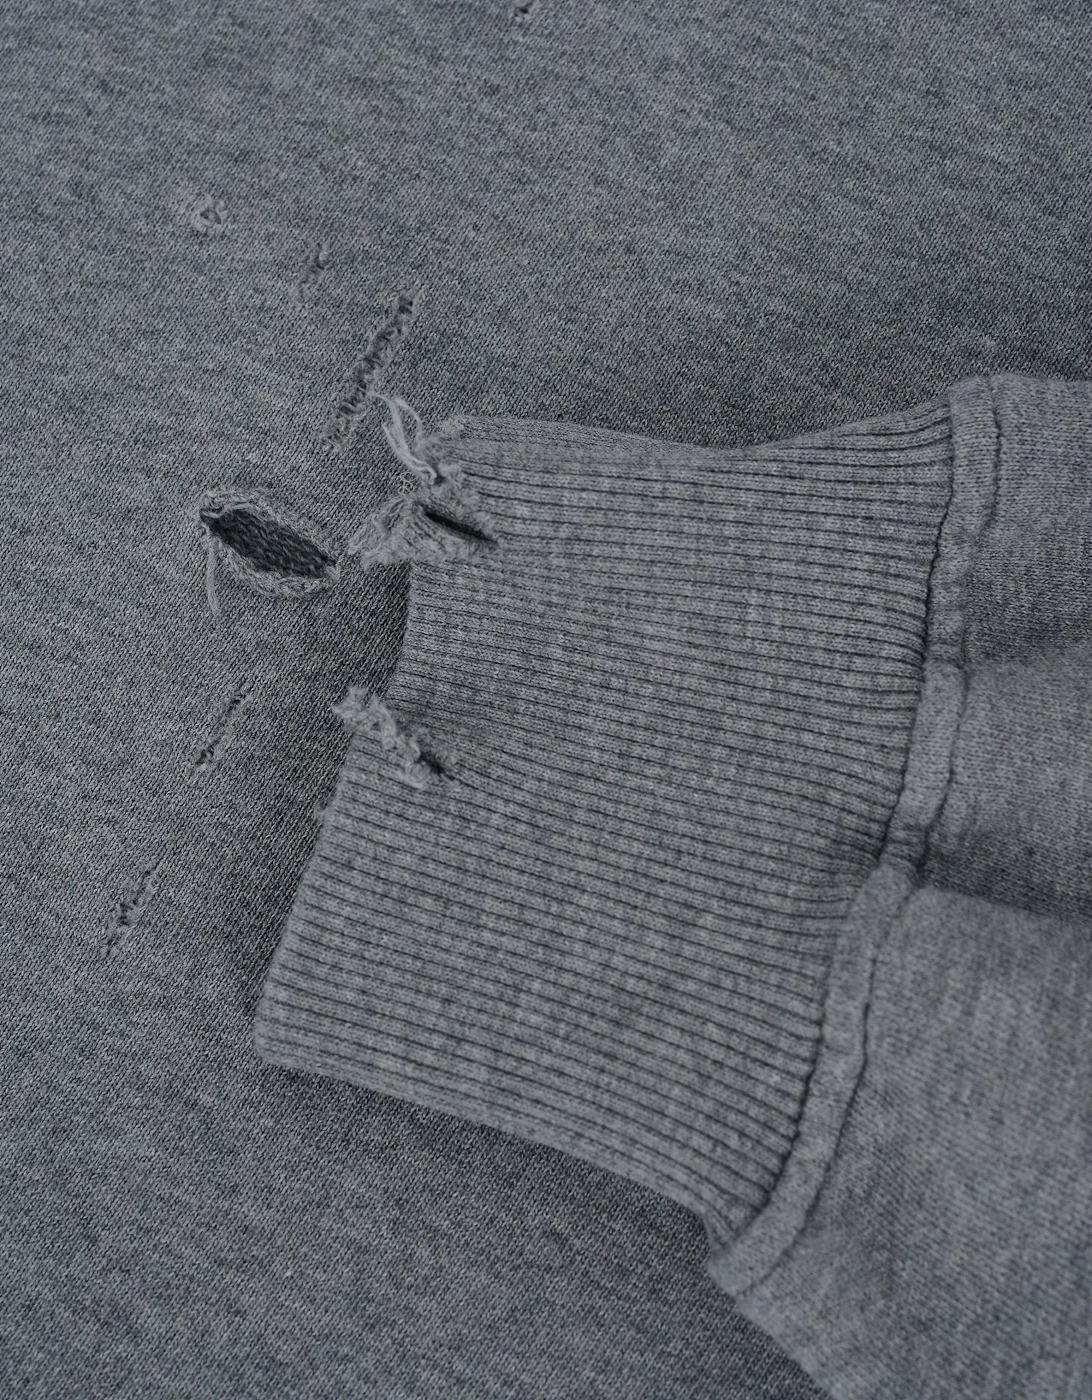 Distressed Plaque Sweatshirt Grey